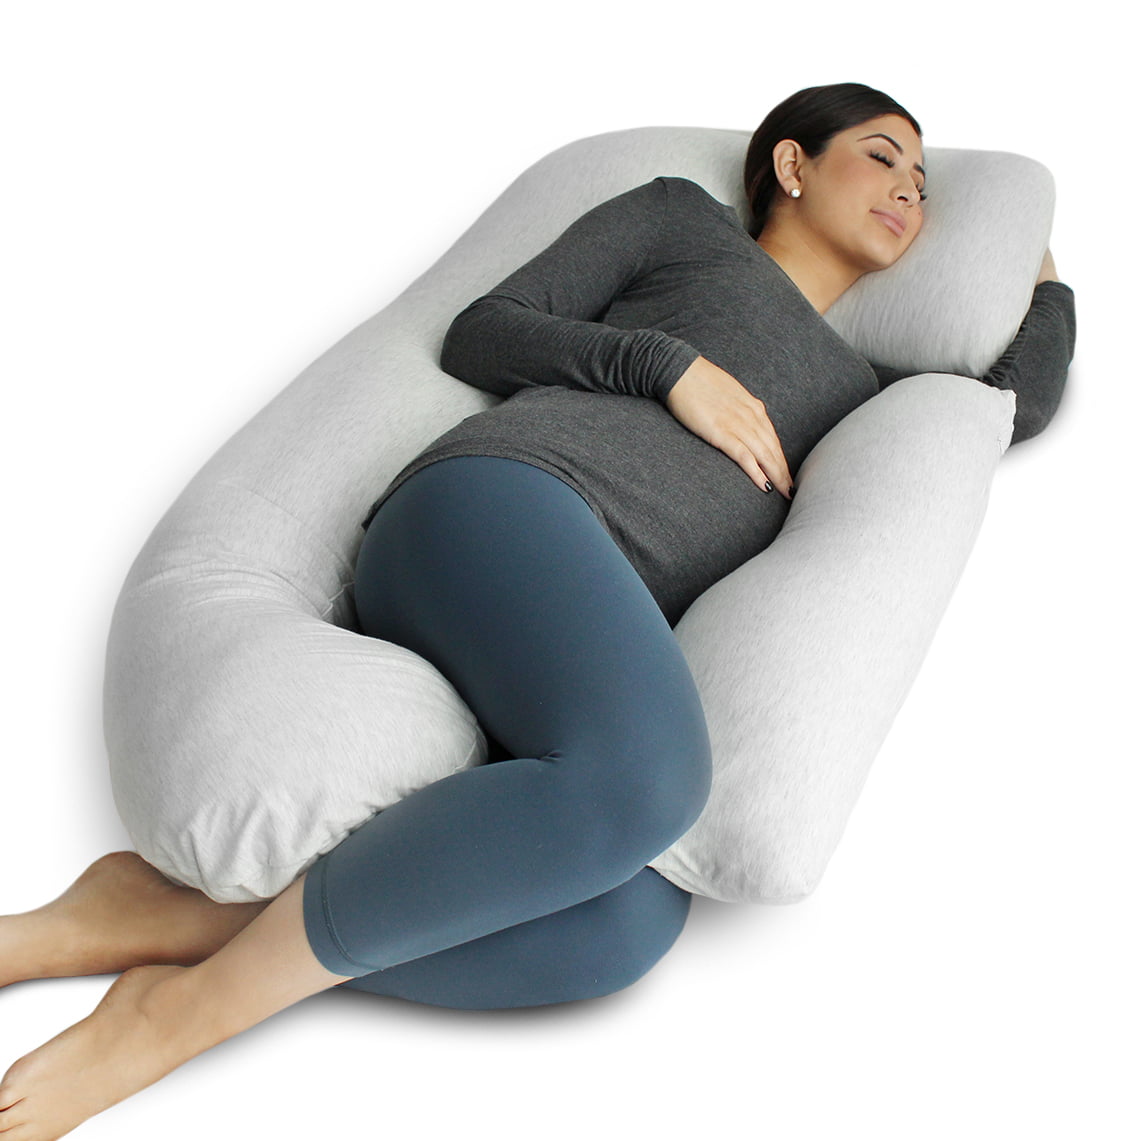 Full Body Maternity Pillow for Pregnant Women PharMeDoc Pregnancy Pillow 